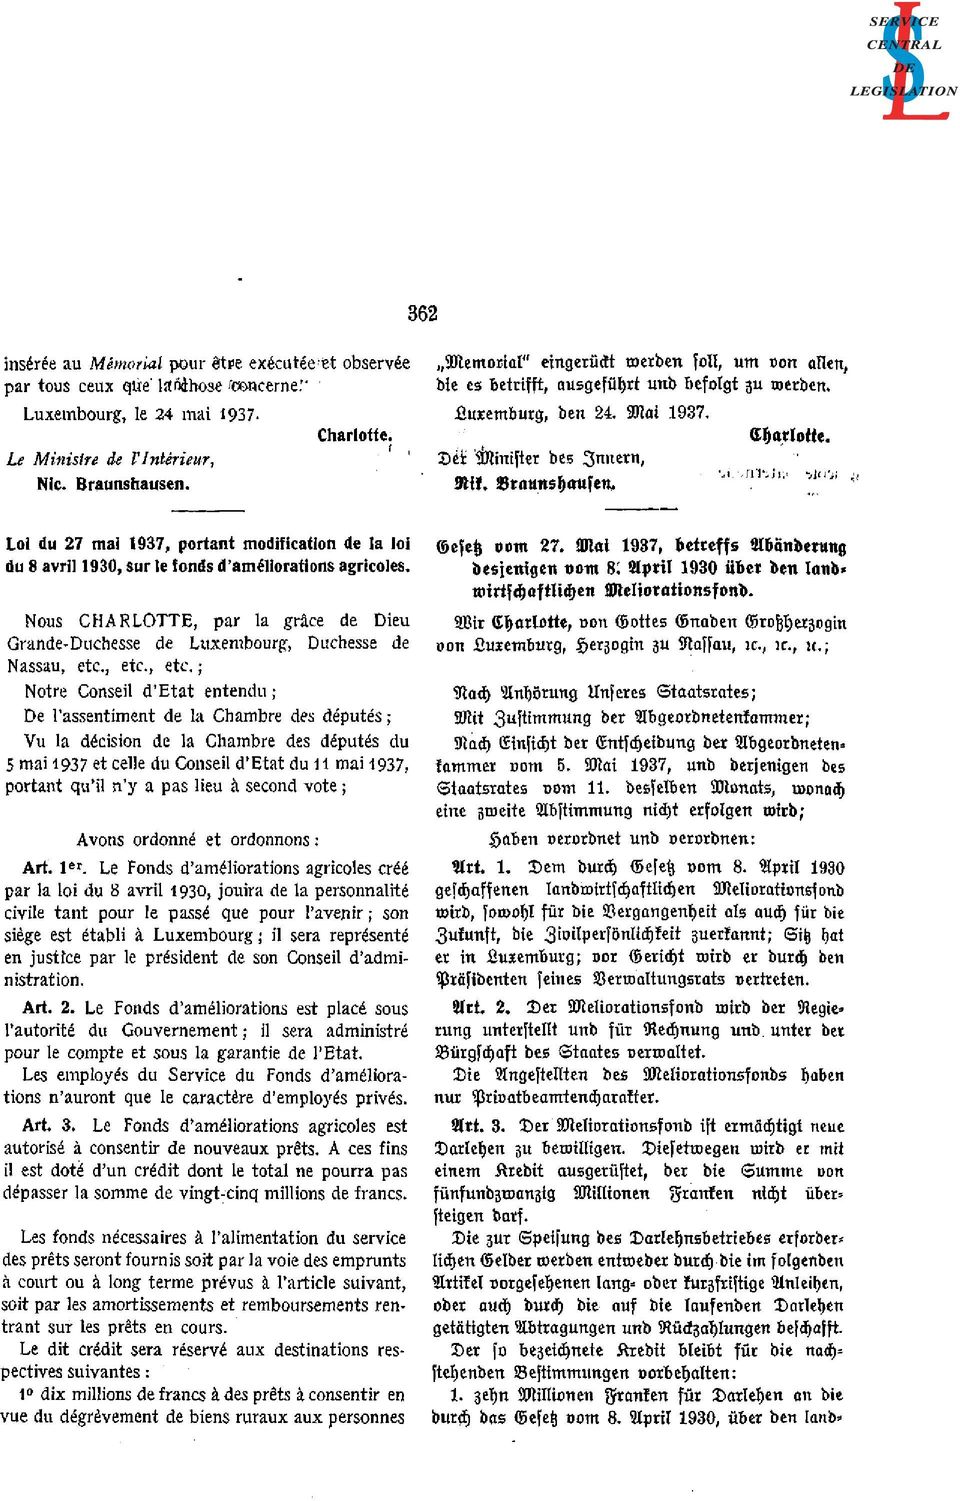 Loi du 27 mai 1937, portant modification de la loi du 8 avril 1930, sur le fonds d'améliorations agricoles. Nous CHARLOTTE, par la grâce de Dieu Grande-Duchesse de Luxembourg, Duchesse de Nassau, etc.